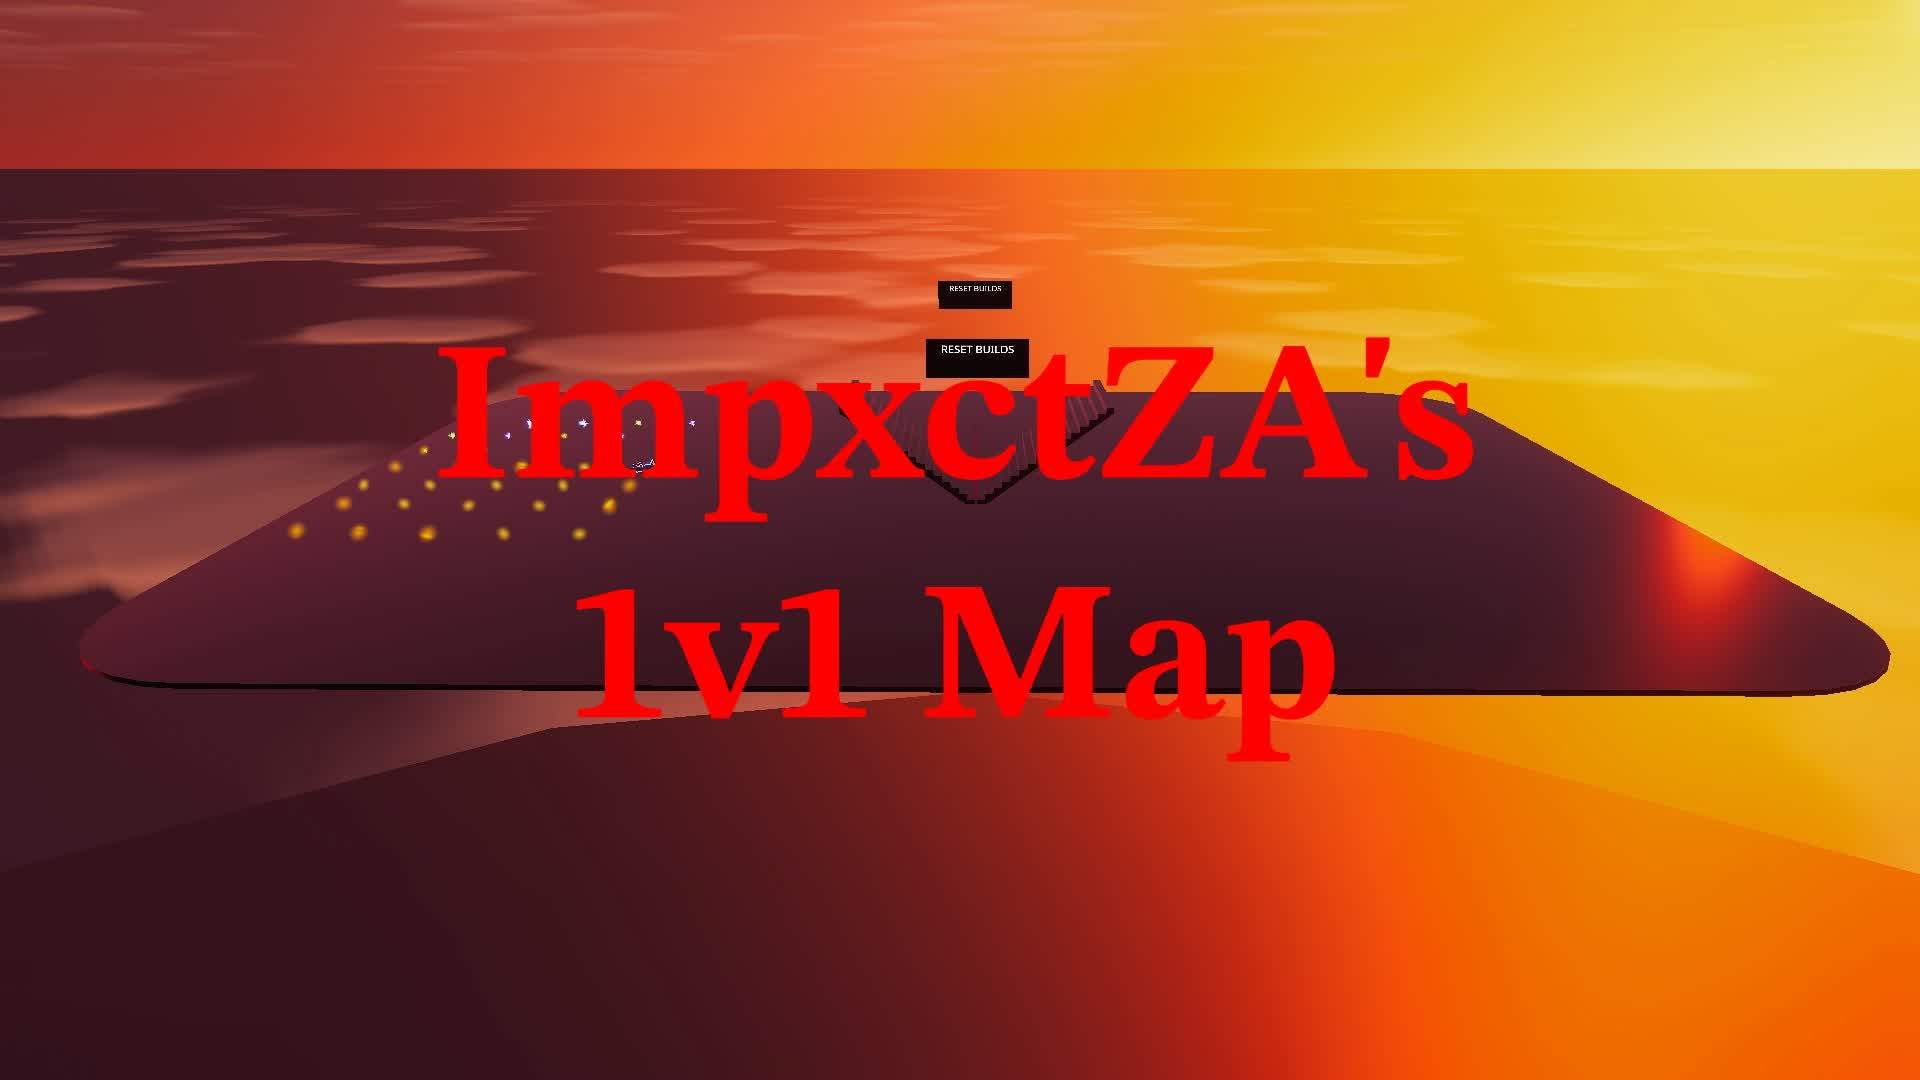 ImpxctZA's 1v1 BUILD FIGHT